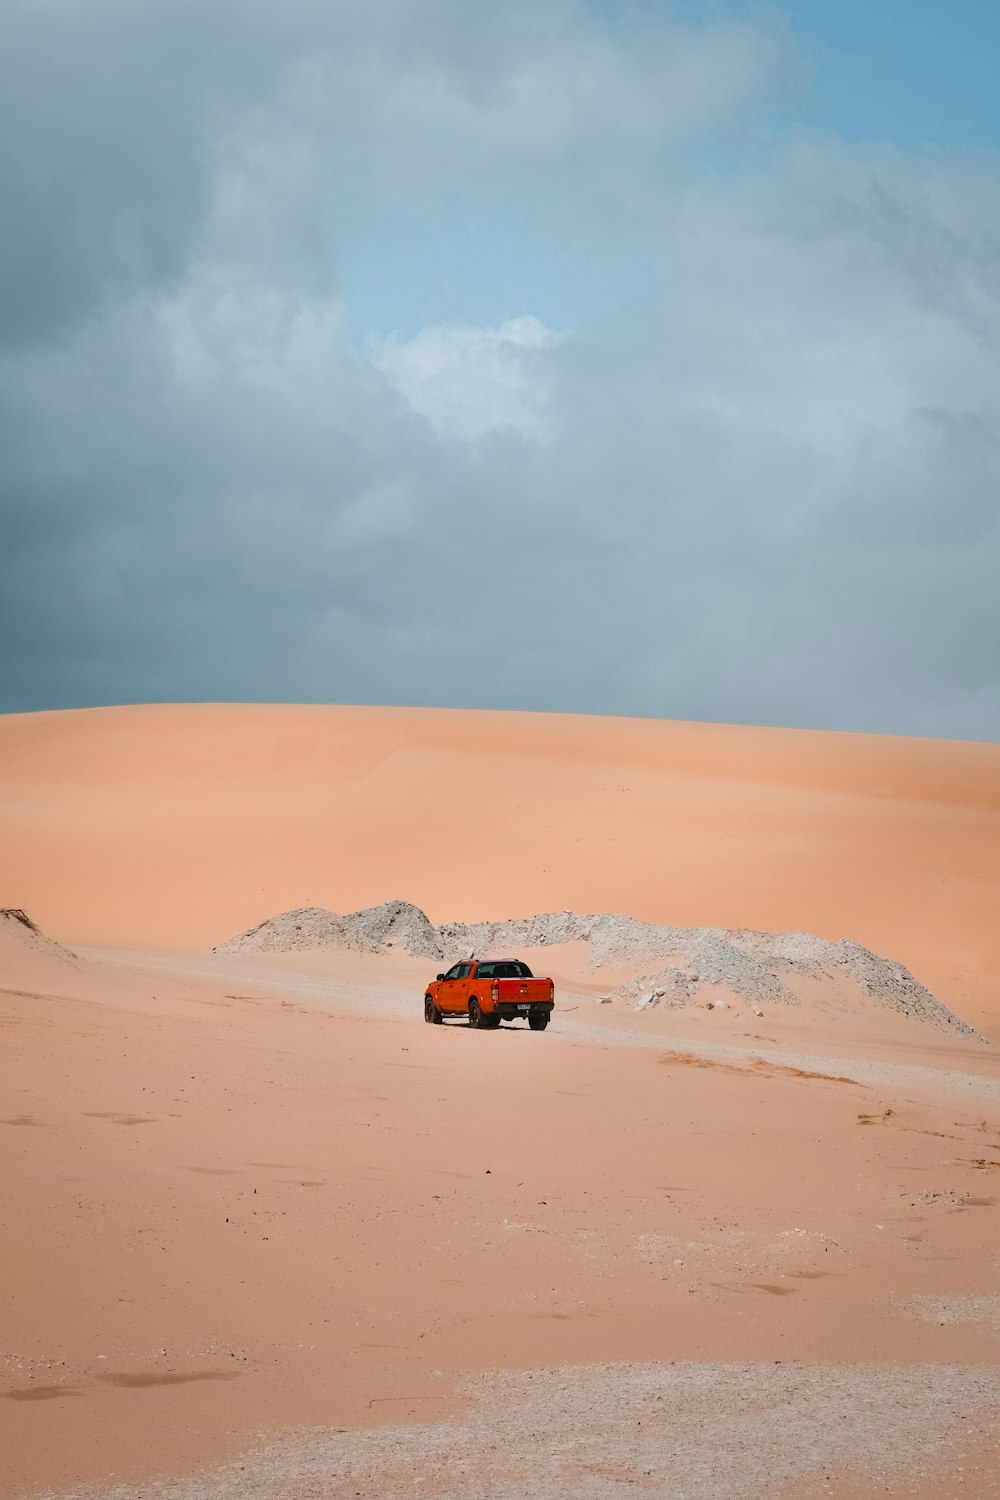 a red truck driving through a desert under a cloudy sky